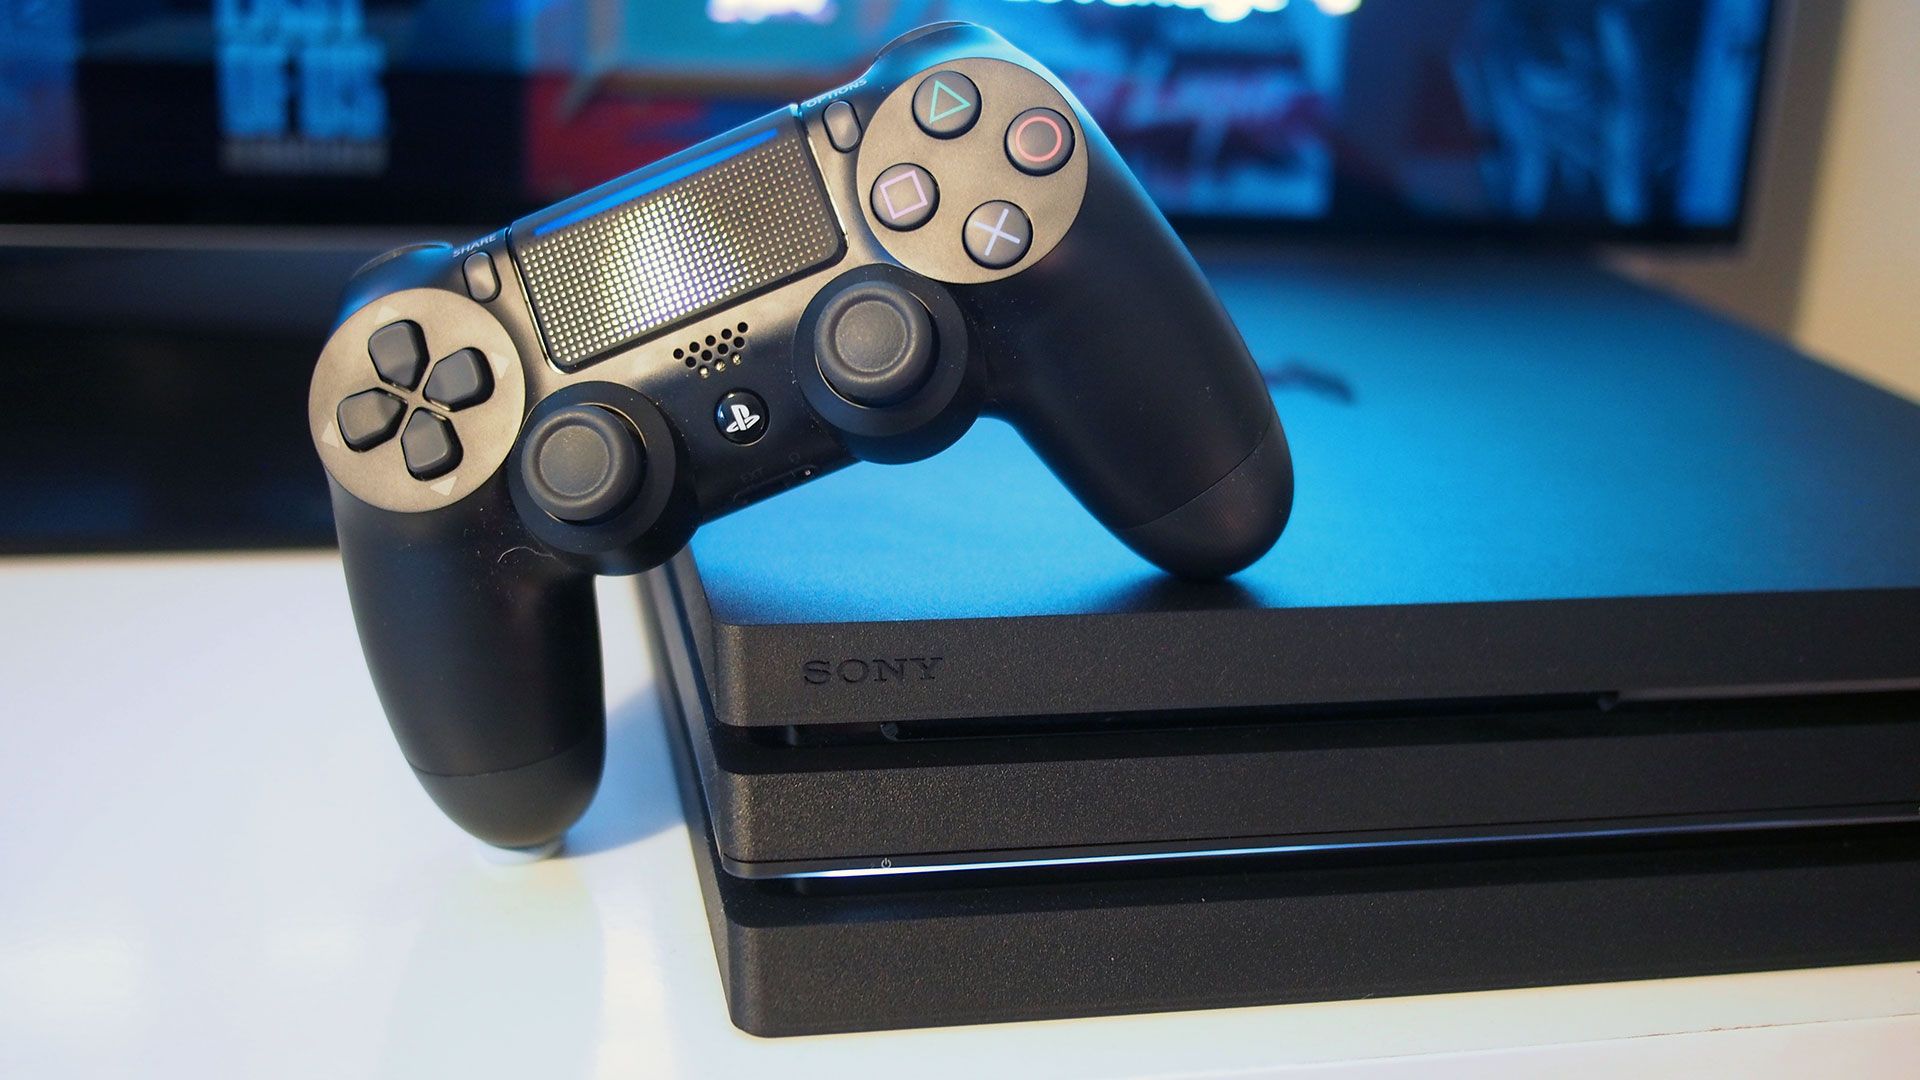 PS4 Slim vs PS4 Pro - Skinny or 4K?